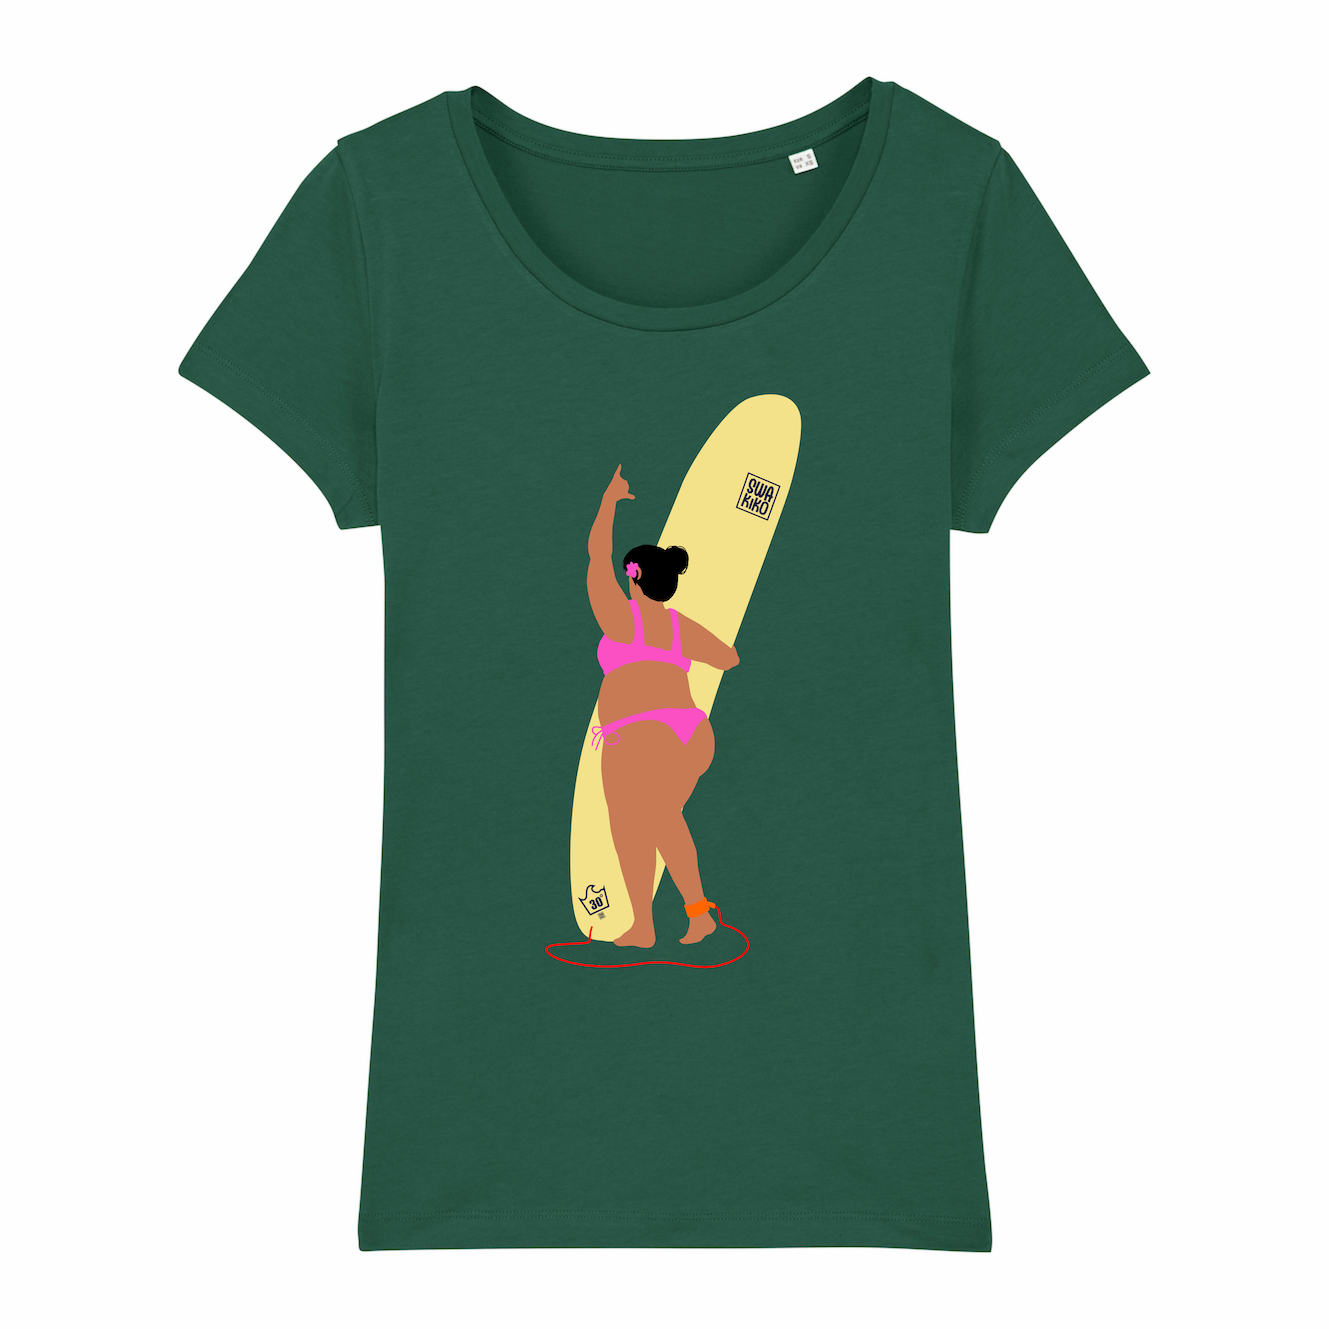 Surf T-shirt, Shakalicious, green